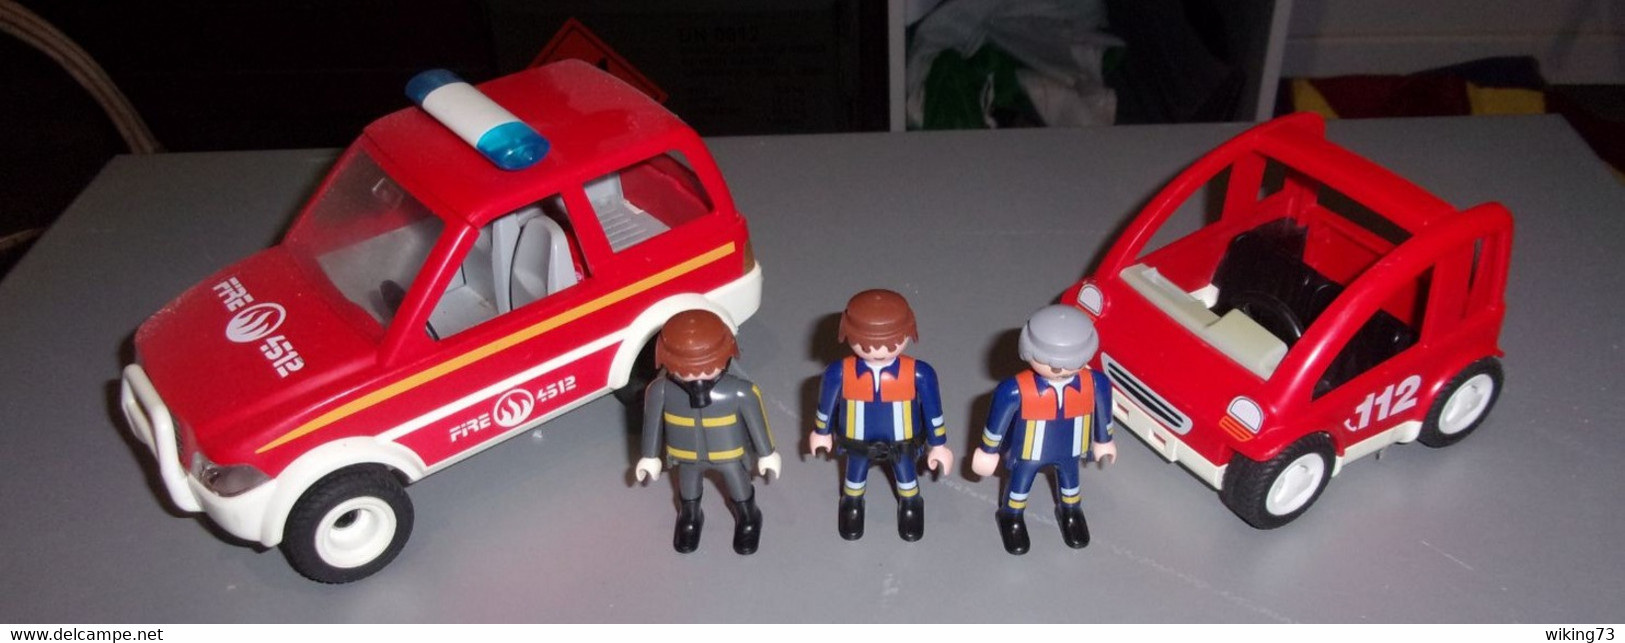 Playmobil - Lot voitures et personnages Pompiers Playmobil - Vintage - 4x4  - jouets